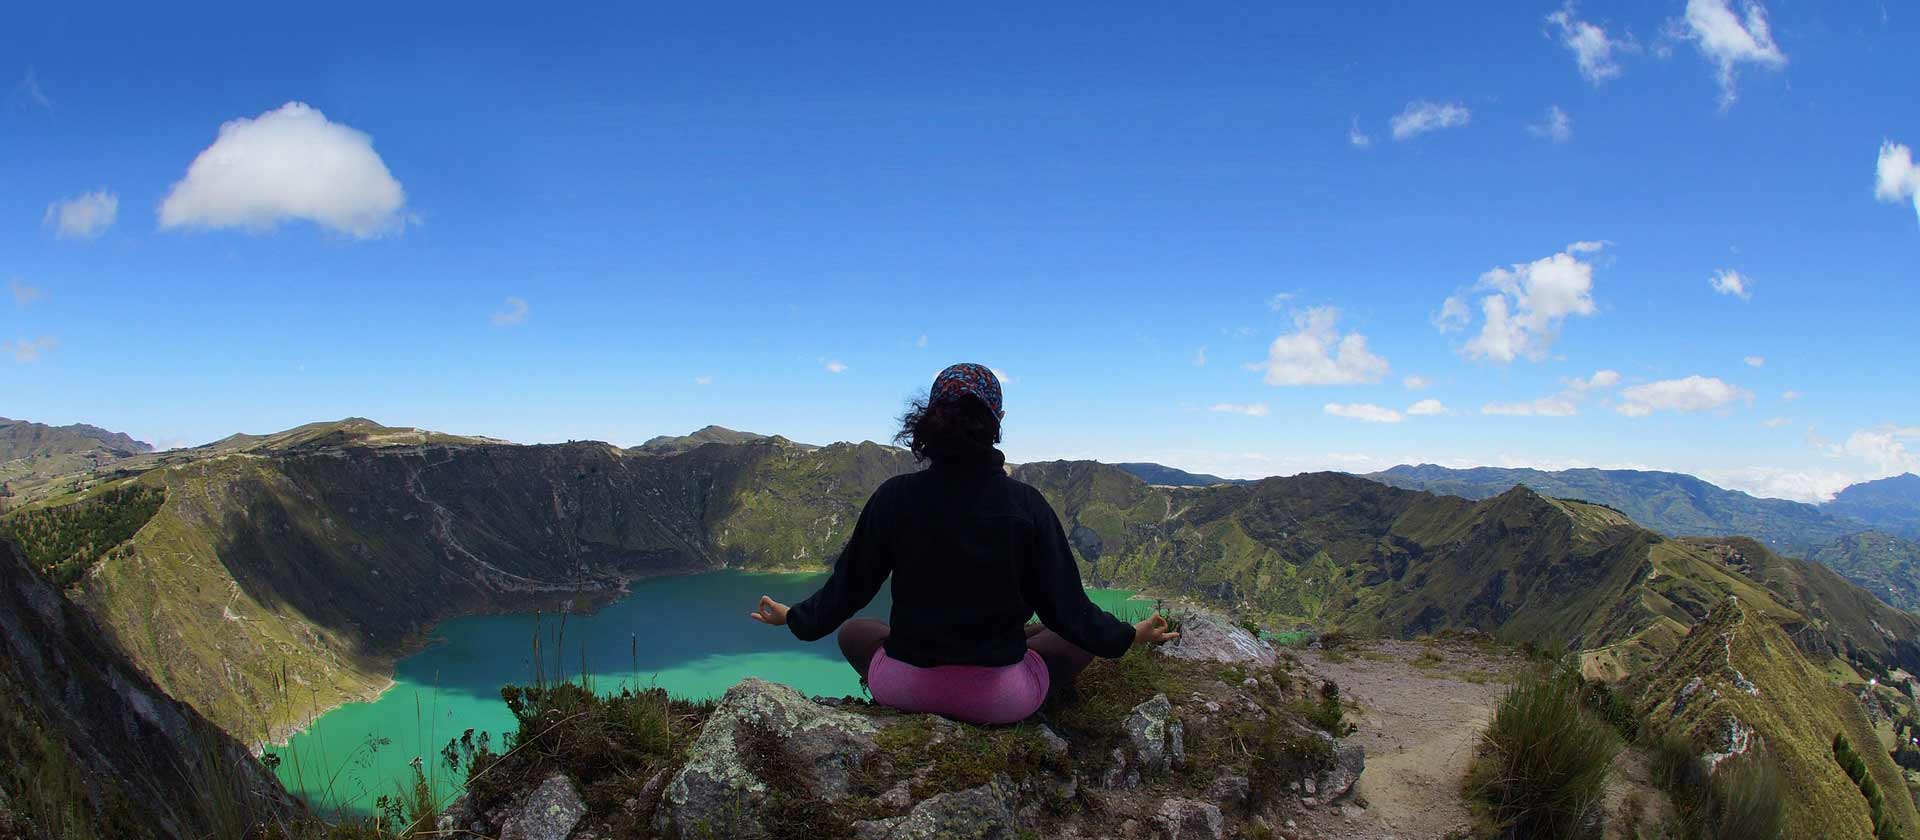 Une femme fait de la méditation au sommet d'une montagne, devant un lac qui est lui aussi au sommet de cette montagne